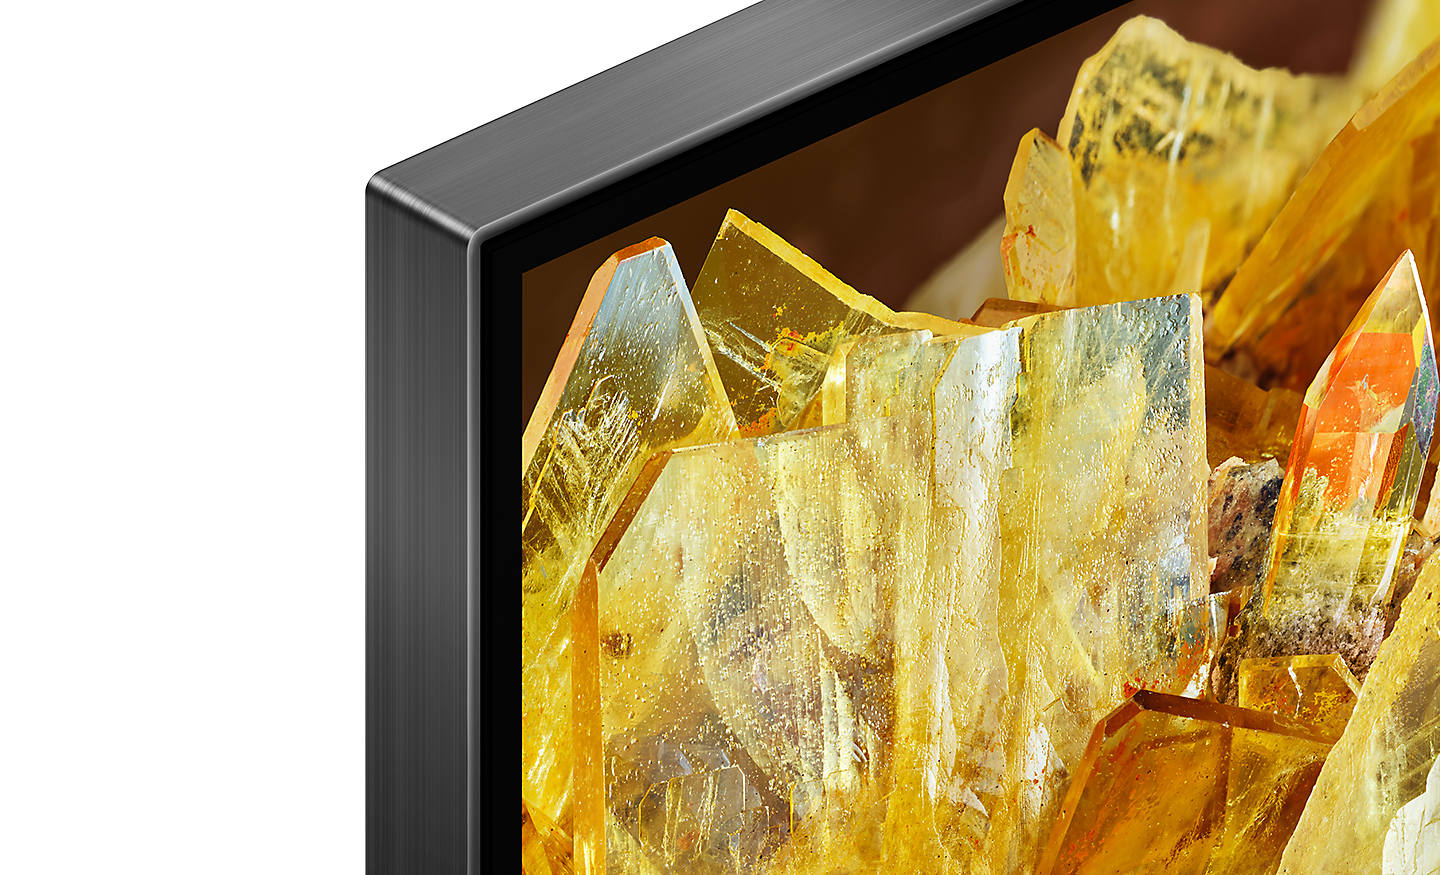 Sudut TV dengan kristal emas di layar